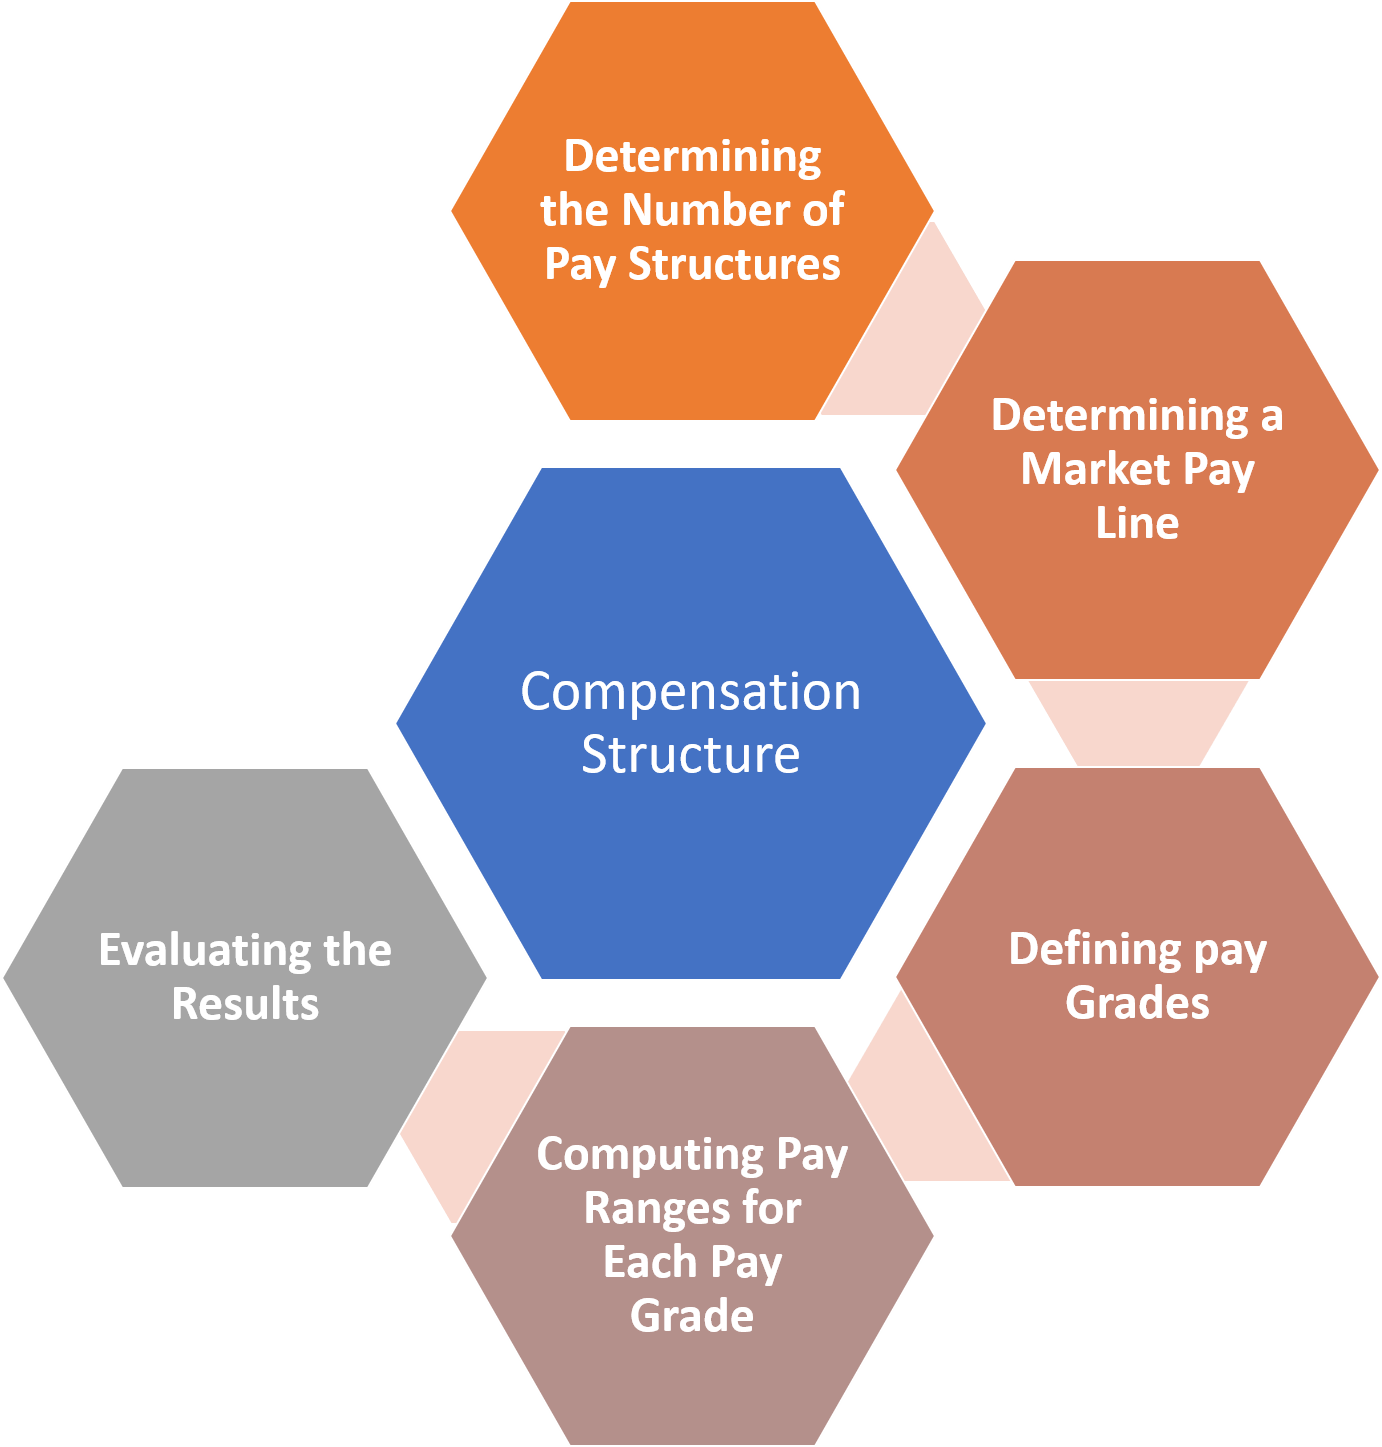 Compensation Structure